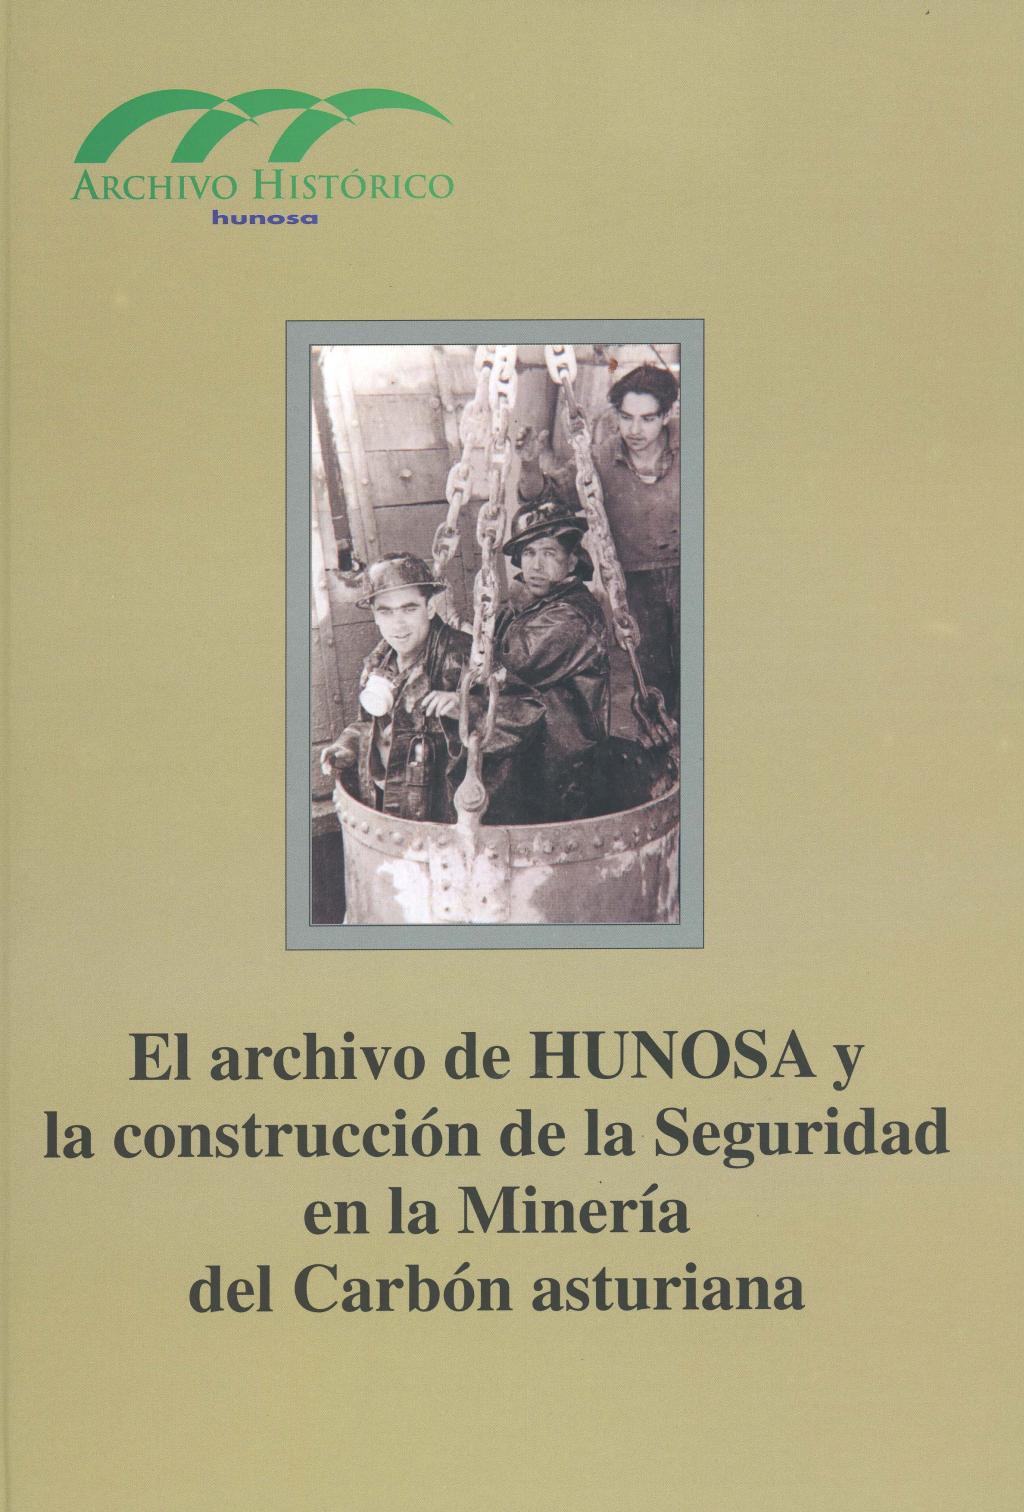 Libros El Archivo de HUNOSA y la construcción de la Seguridad en la Minería del Carbón asturiana Archivo Histórico Hunosa Pozo Fondón